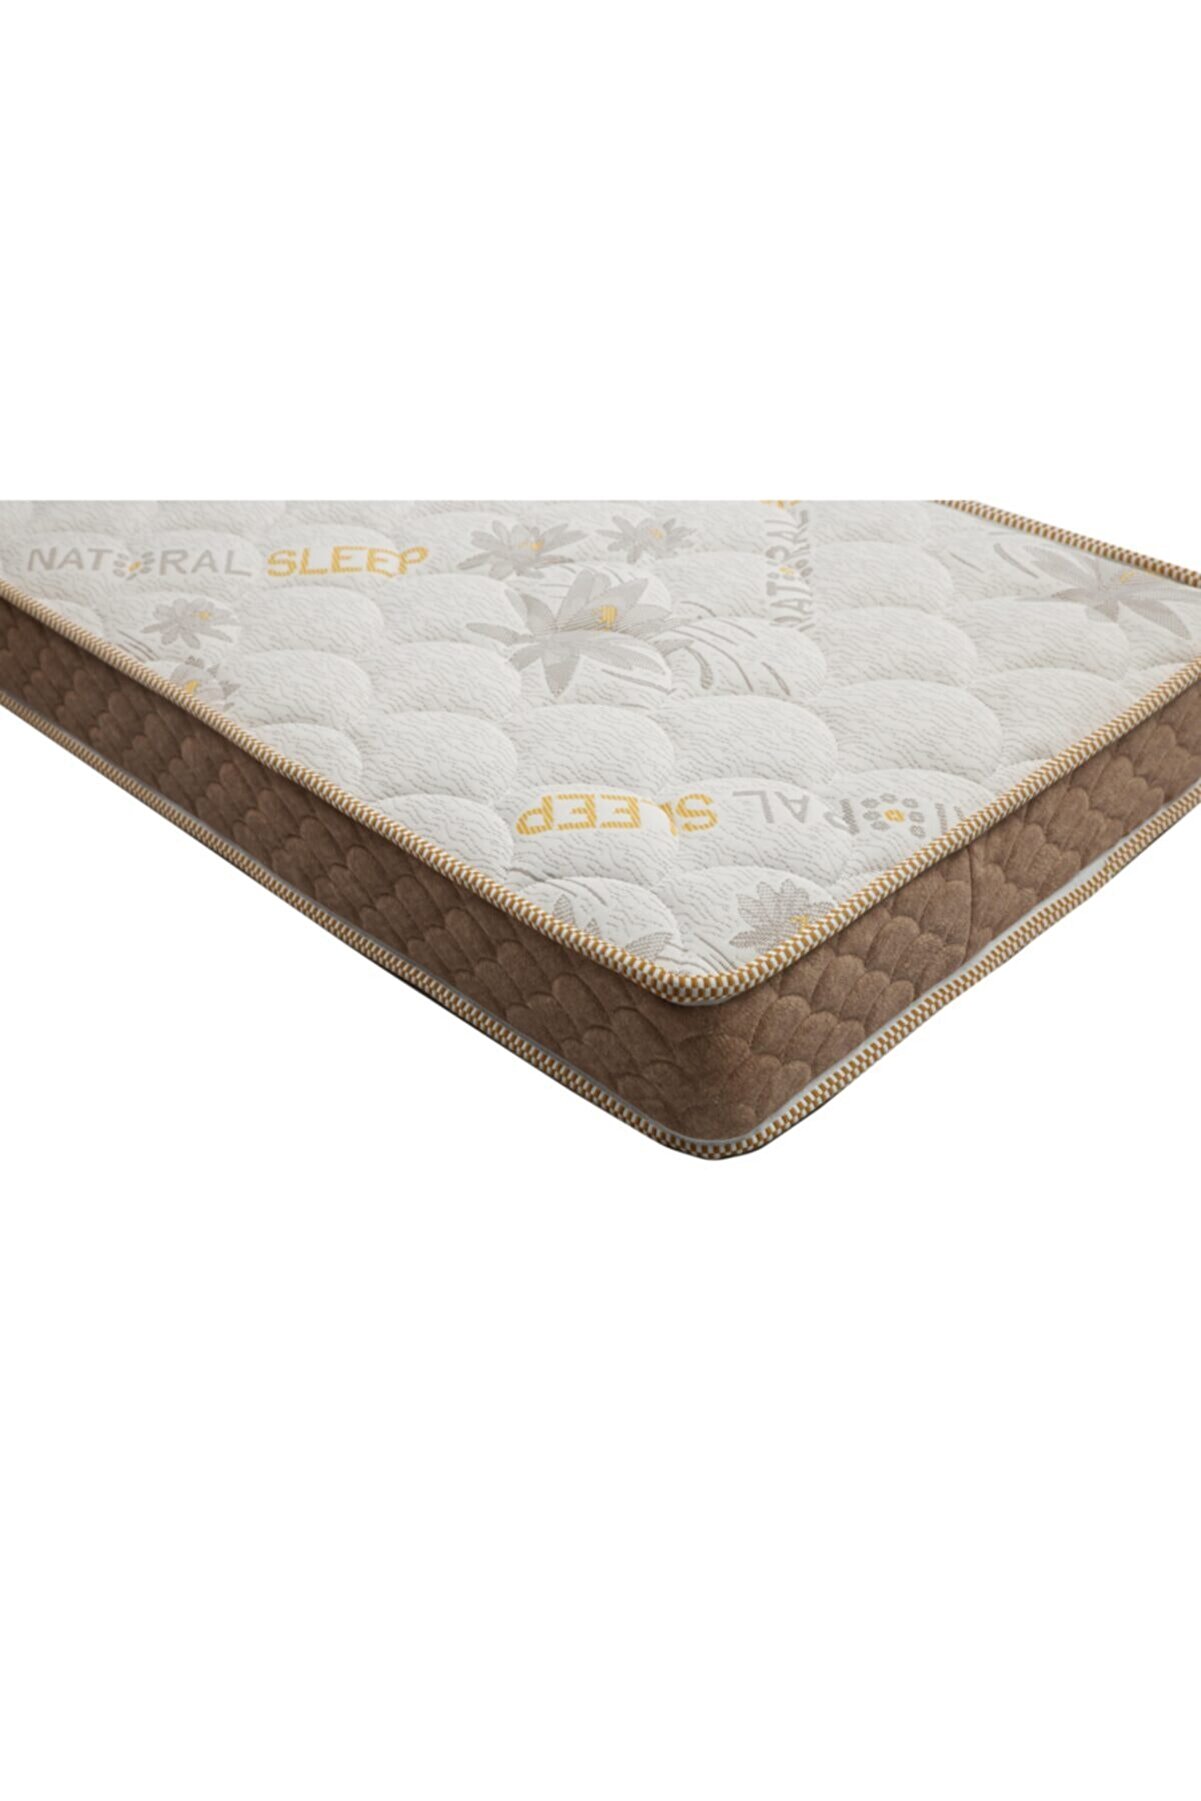 Bedart 50x90x10 Naturel Sleep Örme Pamuk Terletmeyen Kumaş Full Ortapedik Bebek Yatağı